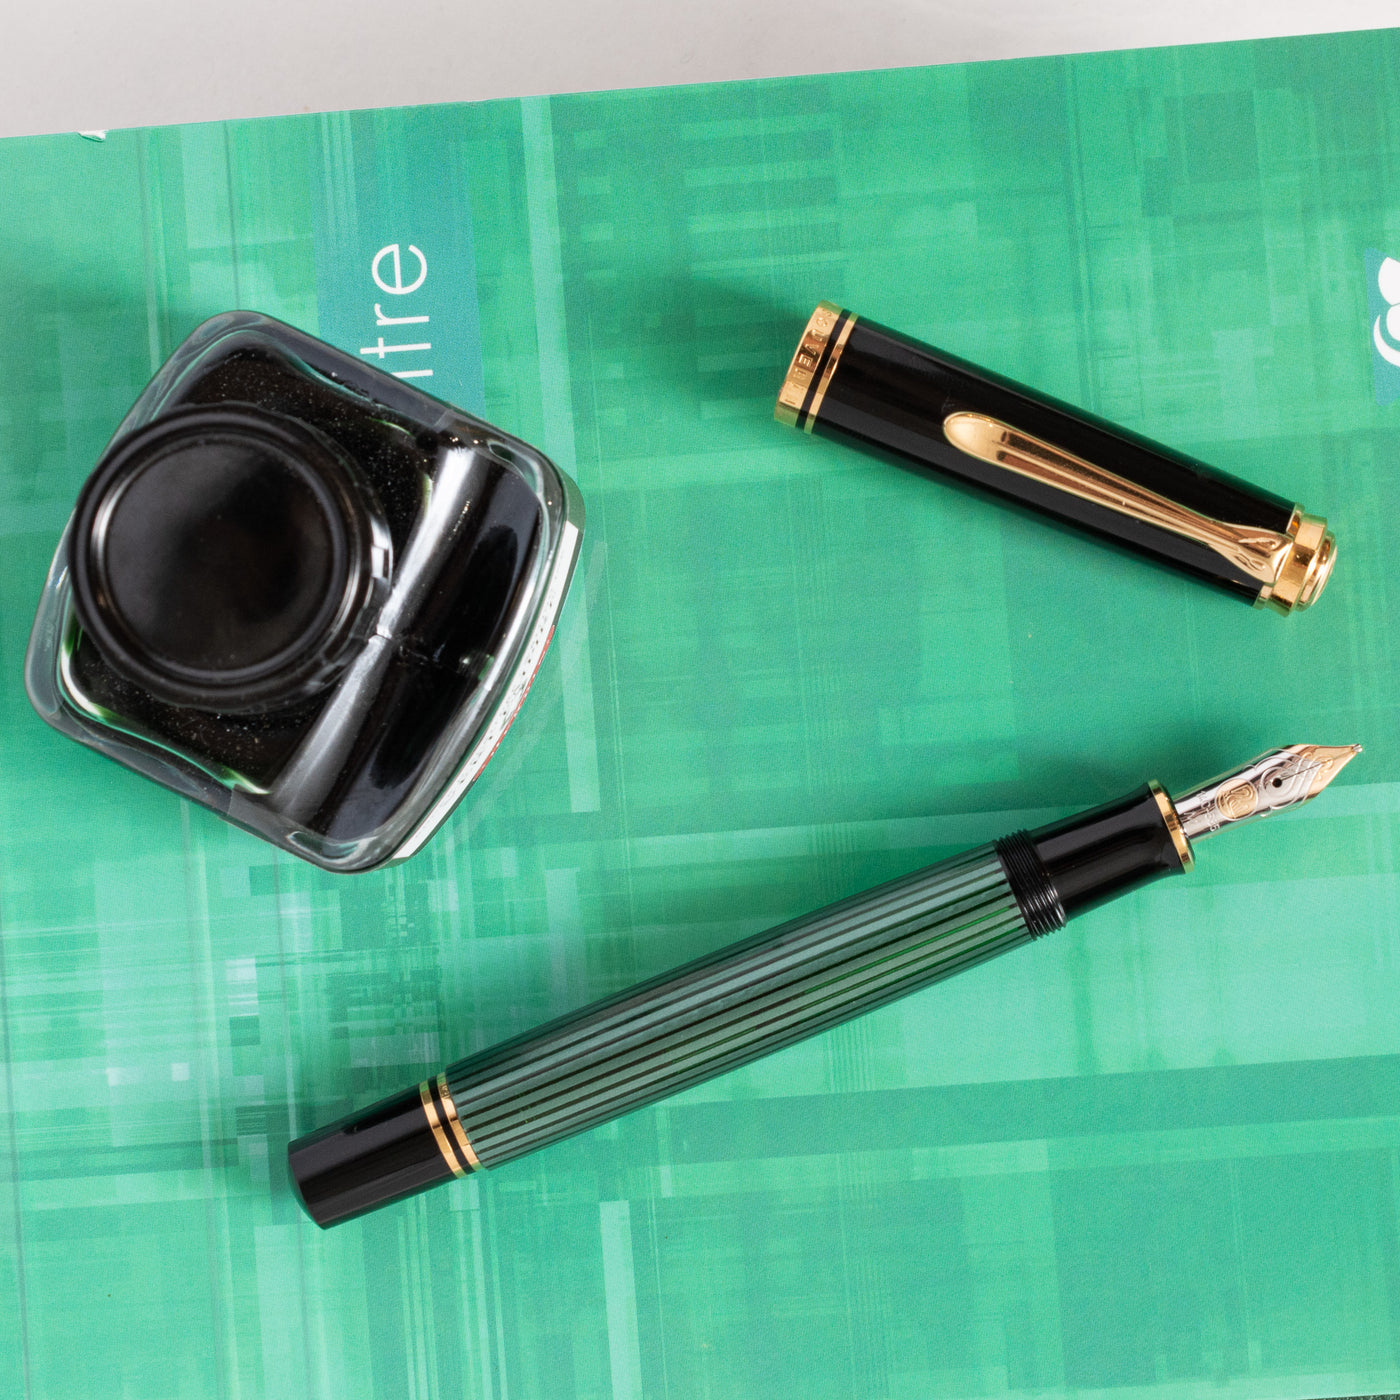 Pelikan Souveran M600 Black & Green Fountain Pen Stripe